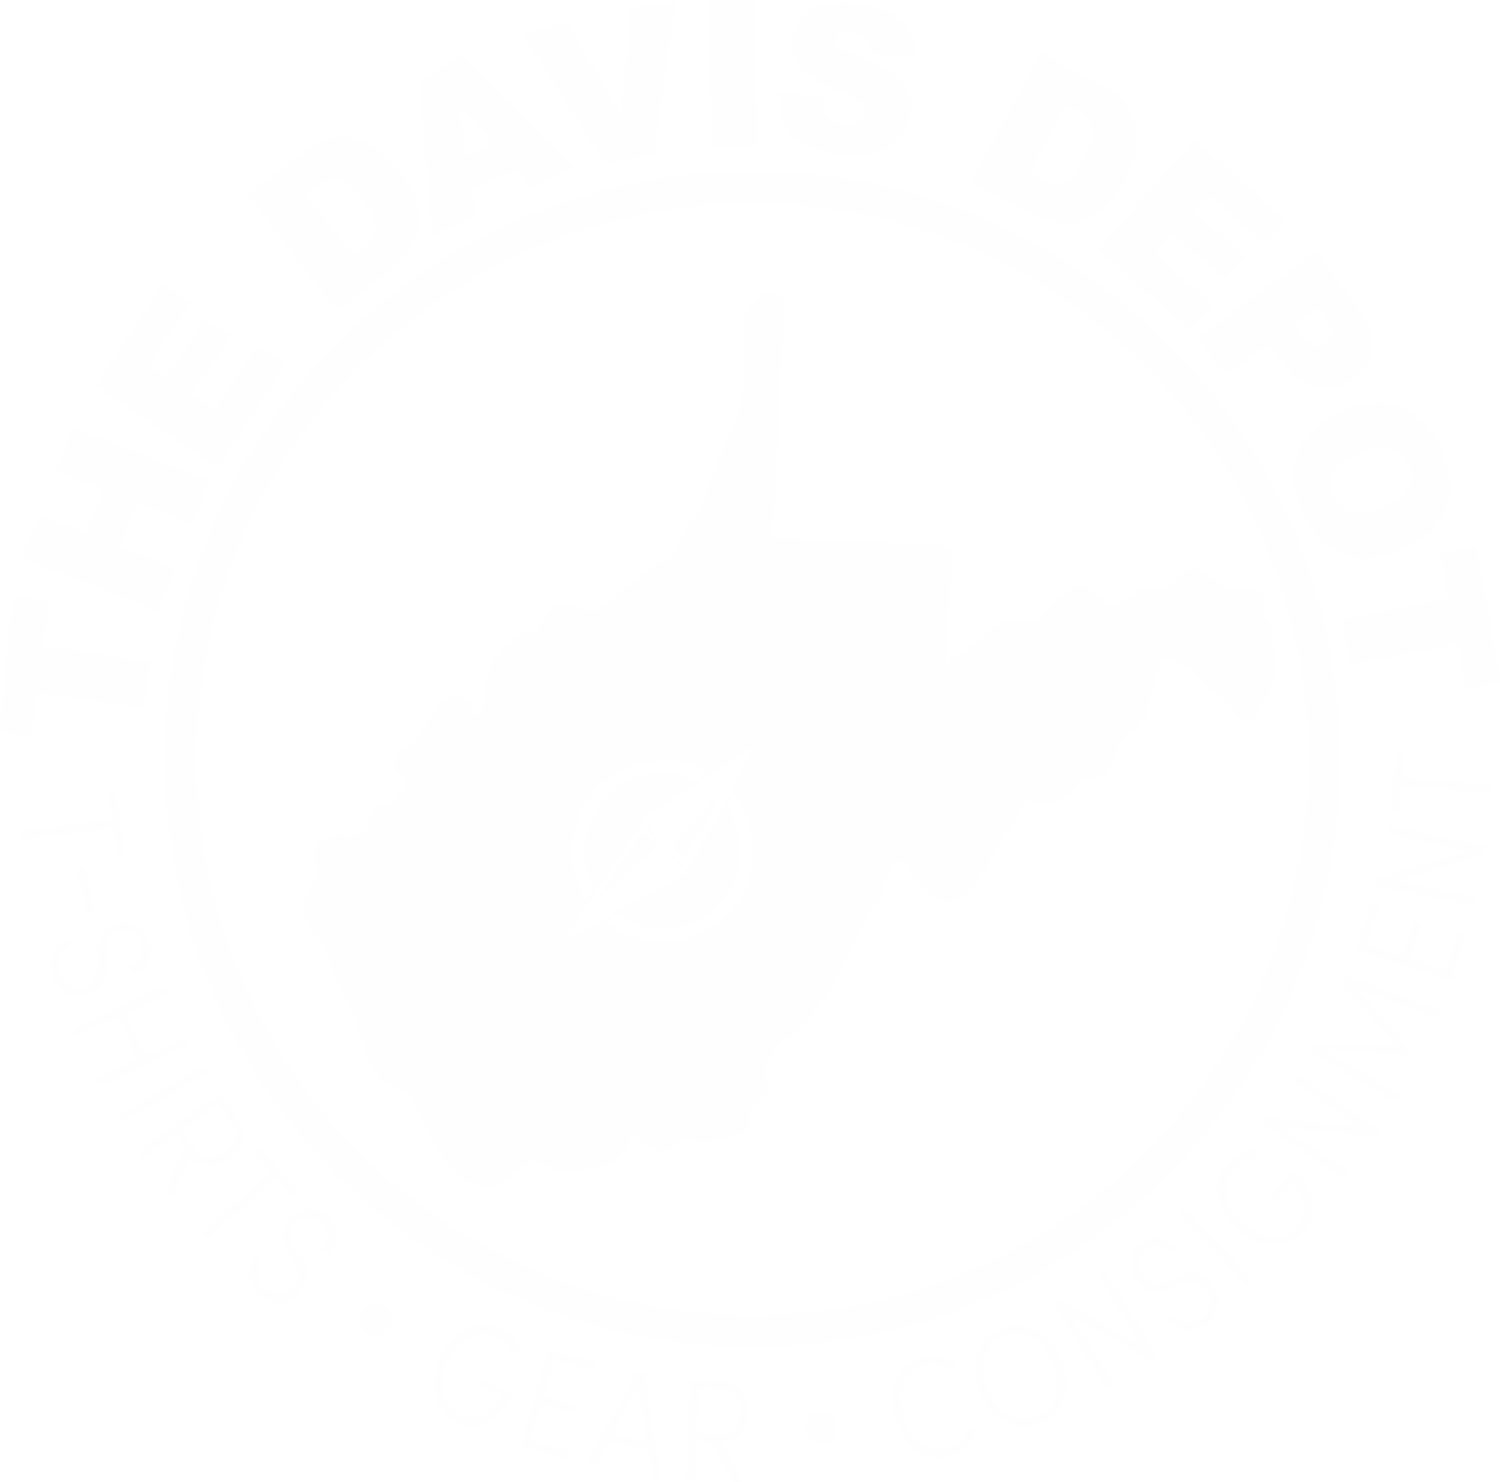 Davis Depot